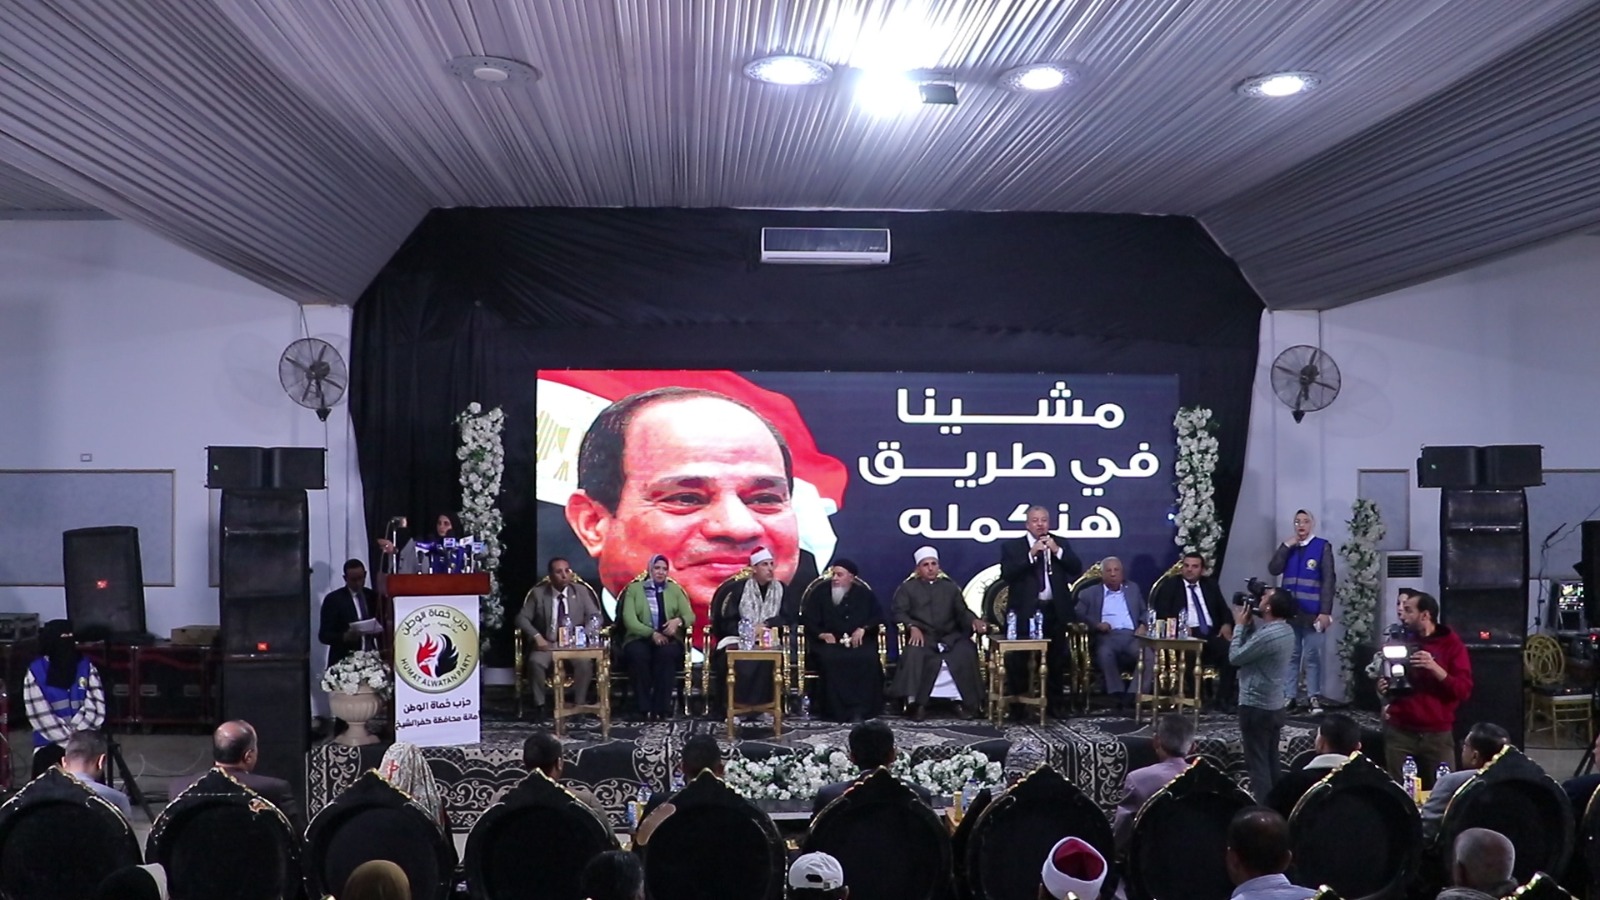 المنصة الرئيسية لمؤتمر دعم المرشح عبدالفتاح السيسي لحزب حماة وطن